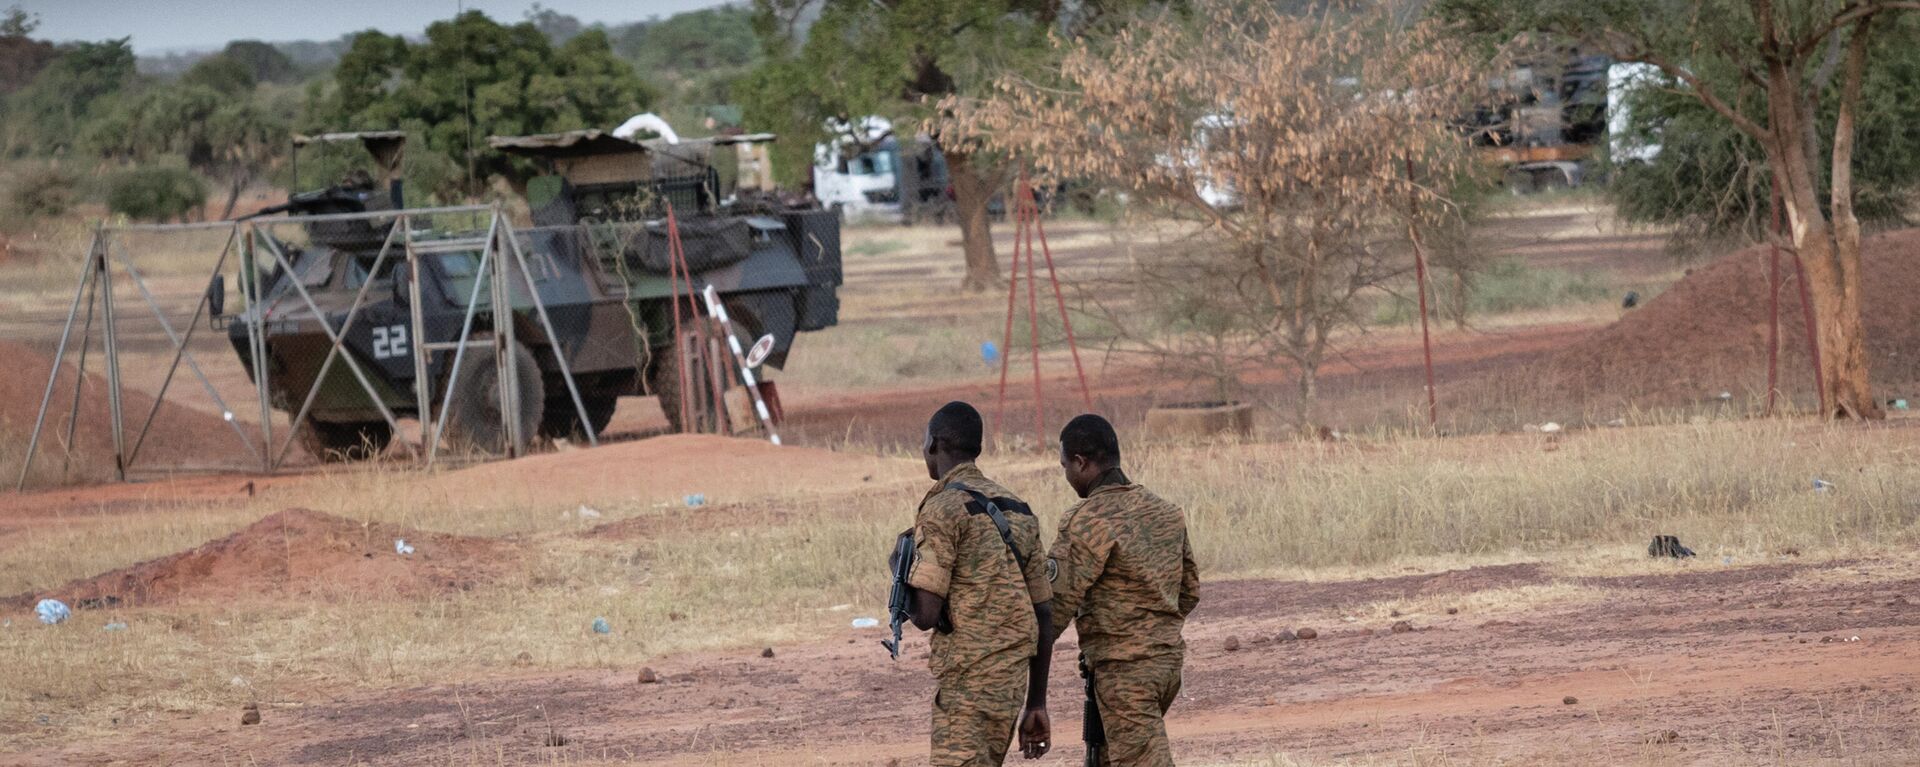 Des militaires burkinabè patrouillent près d'un véhicule blindé français stationné à Kaya, capitale de la région du centre-nord du Burkina Faso, après que des personnes ont manifesté pour s'opposer au passage d'un convoi logistique français vers le Niger voisin, le 20 novembre 2021 - Sputnik Afrique, 1920, 21.12.2021